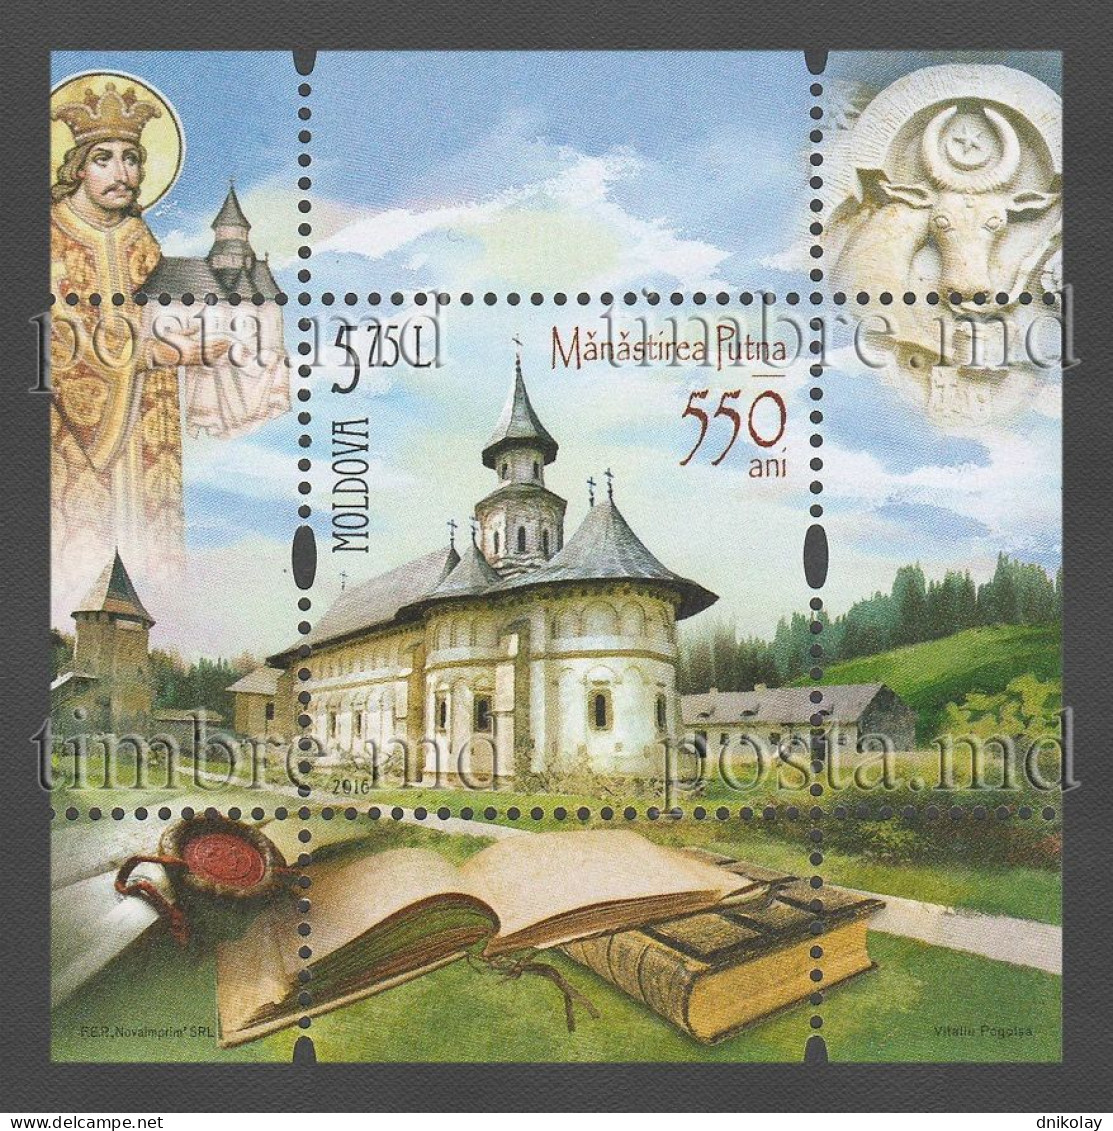 2016 973 Moldova The 550th Anniversary Of Putna Monastery MNH - Moldova